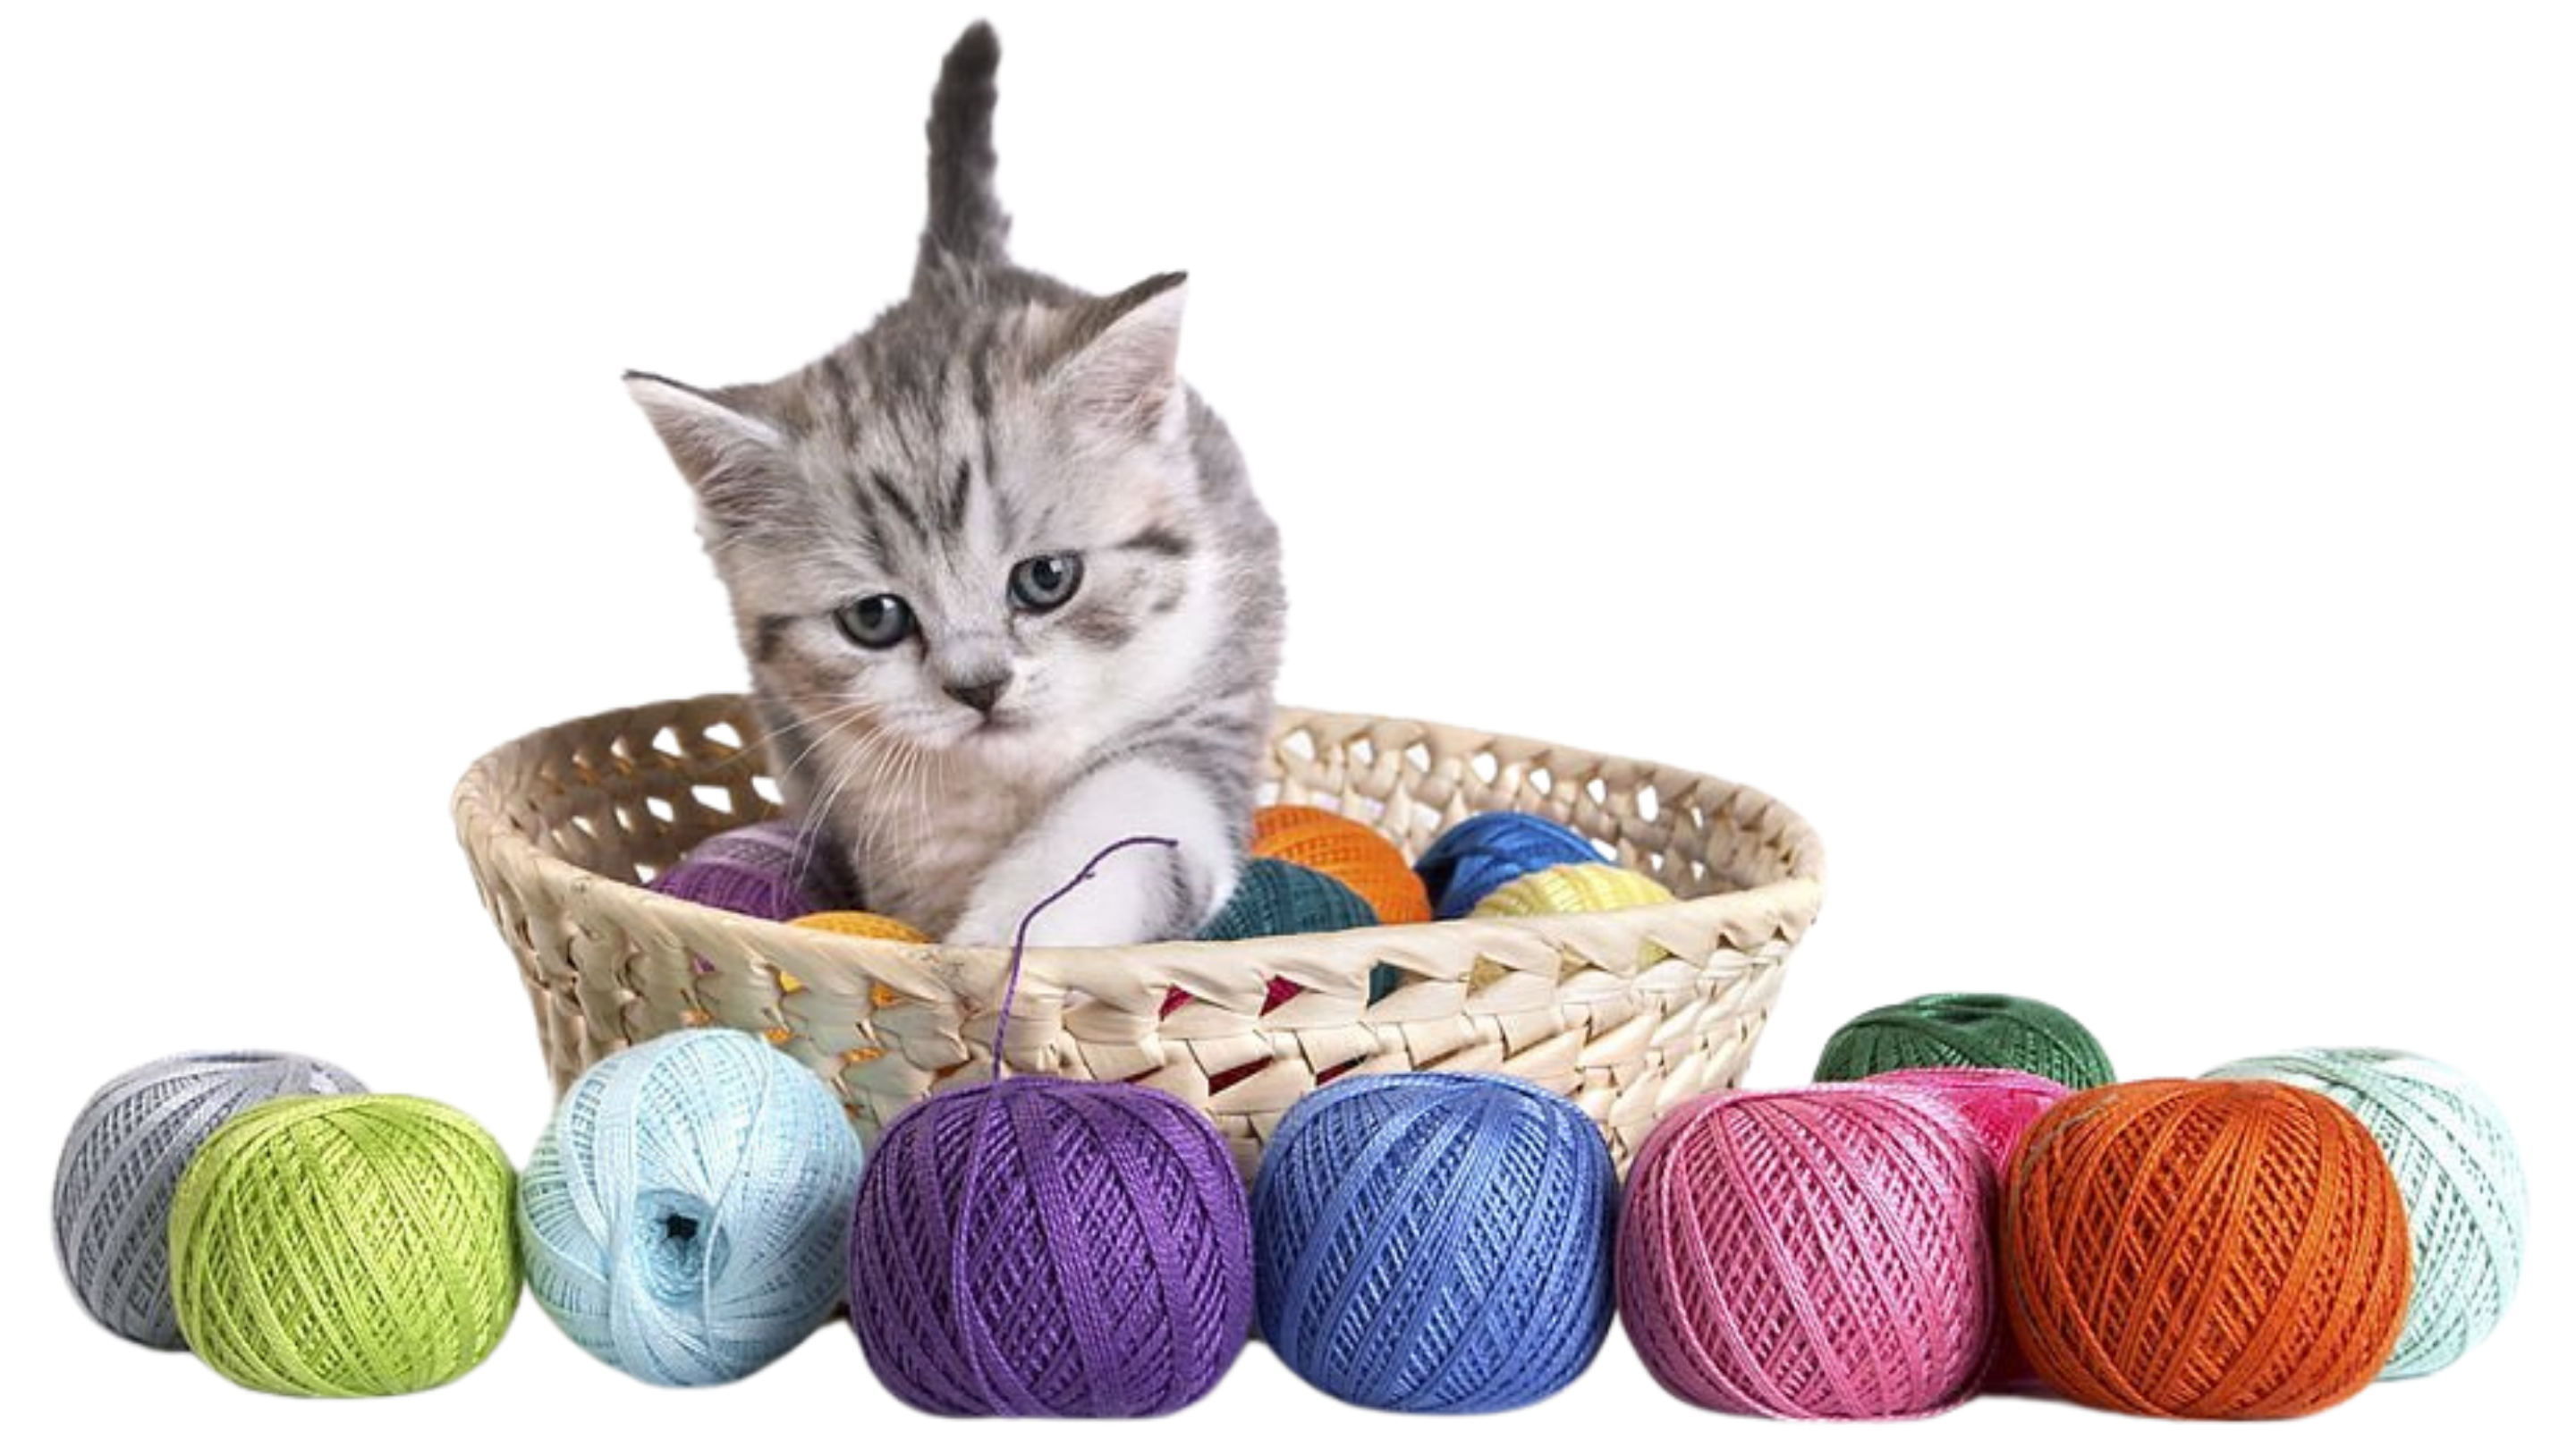 Kitten in basket of wool